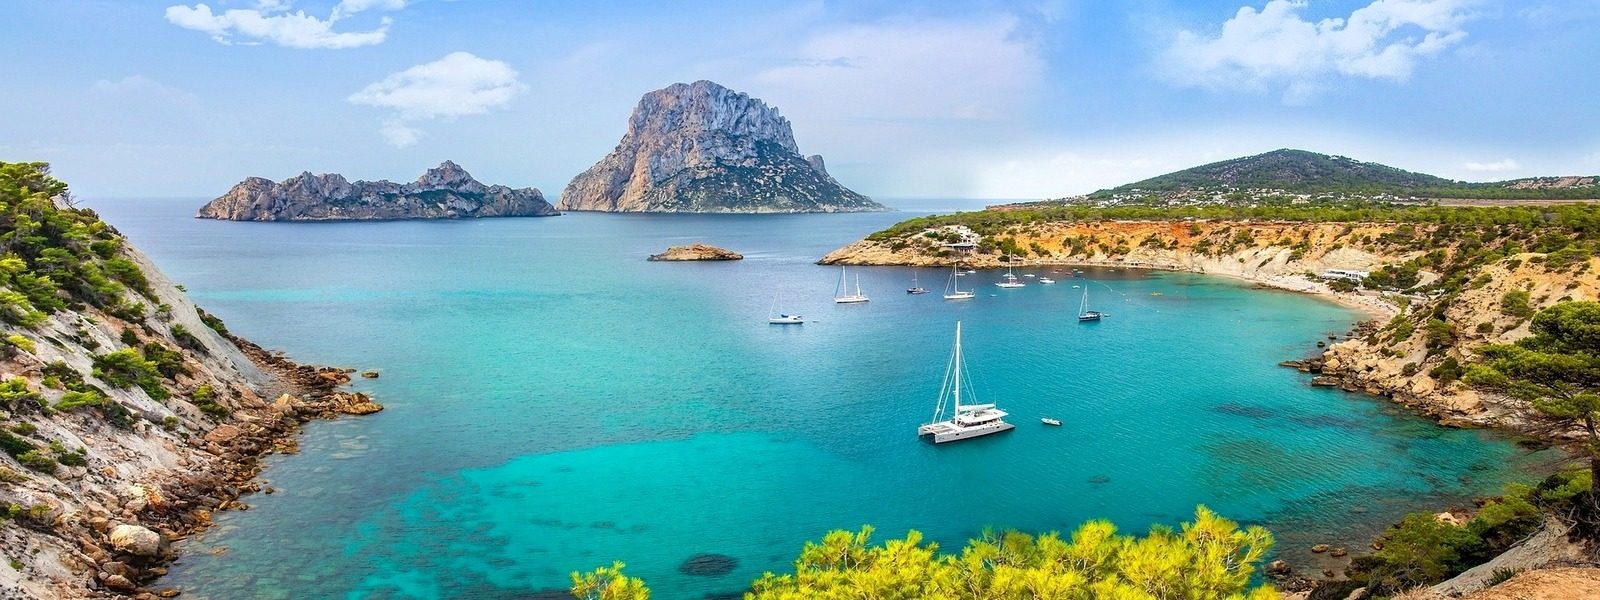 Spanyol tengerpart szállás kínálata, Ibiza